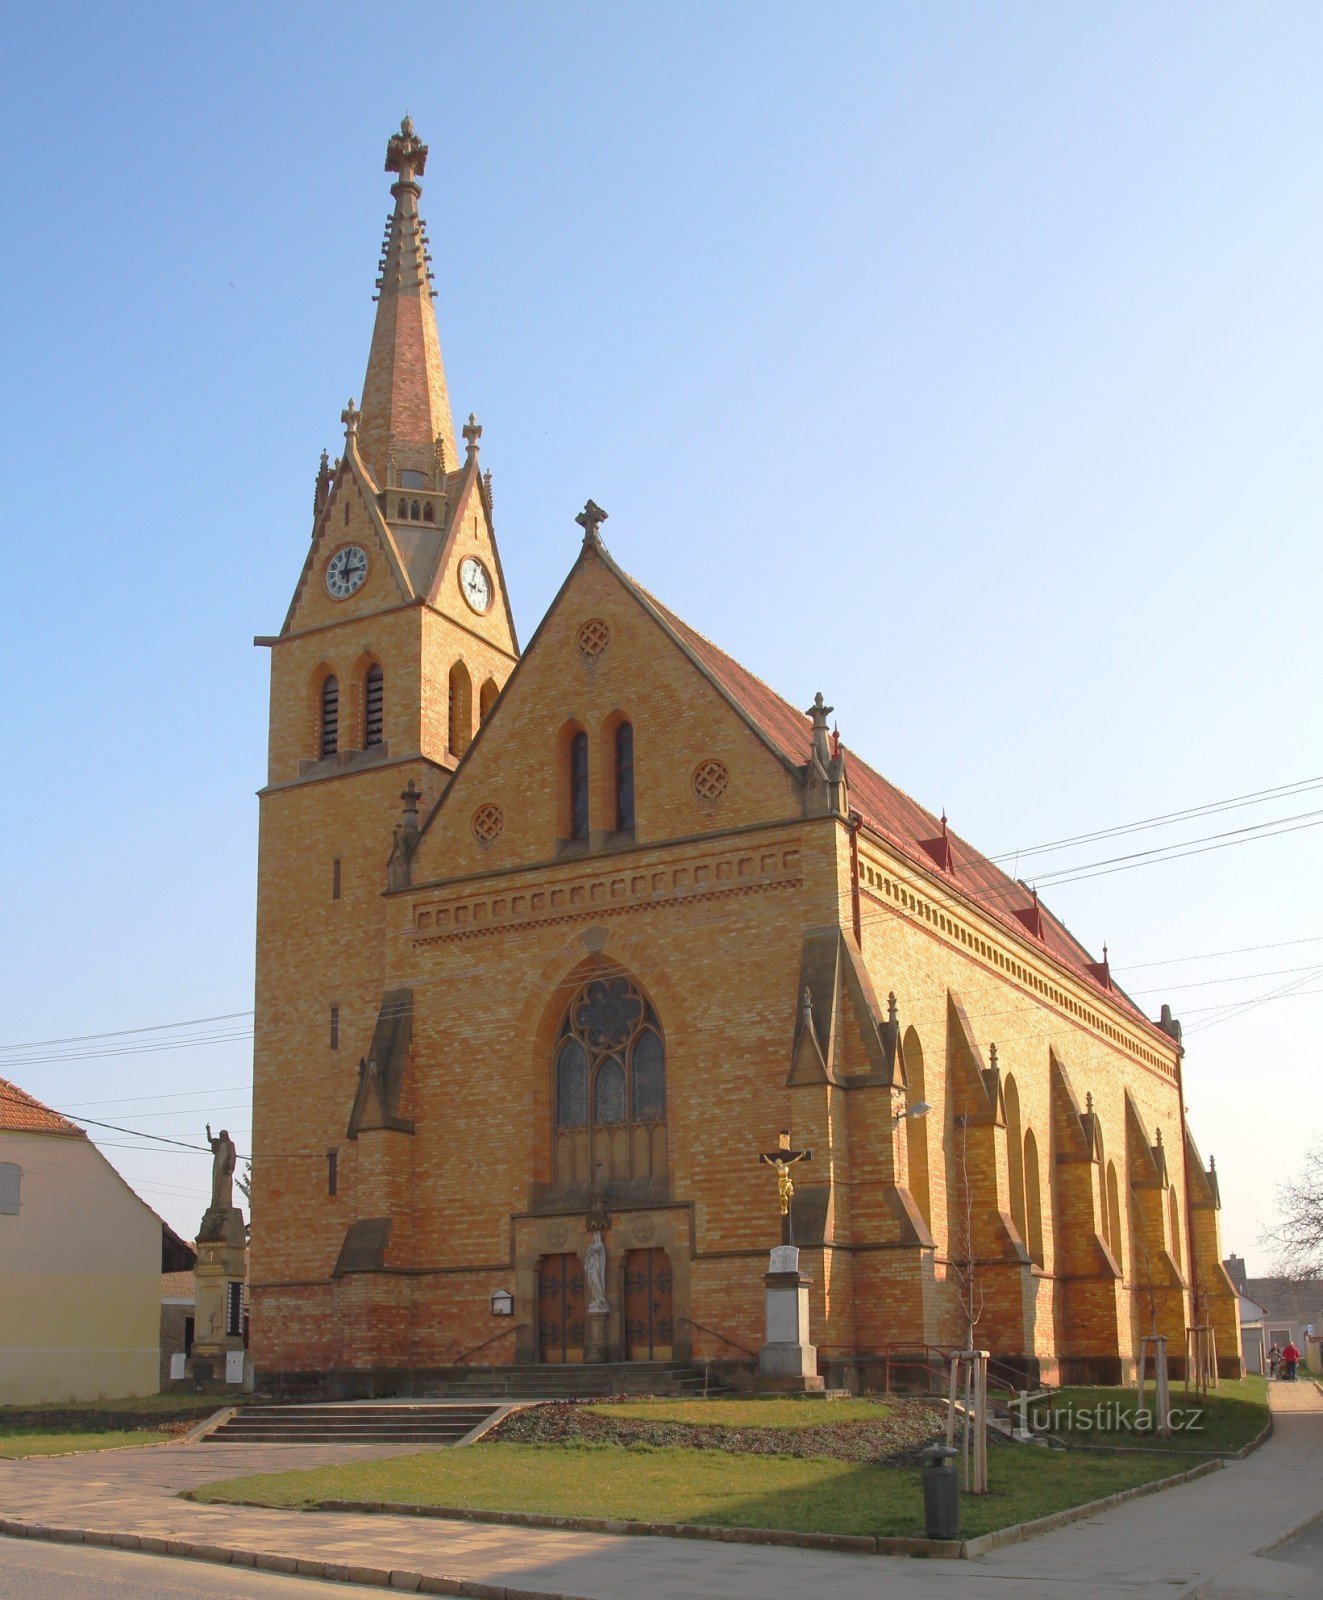 Pogled na crkvu s glavnog ulaza sa sjeverne strane